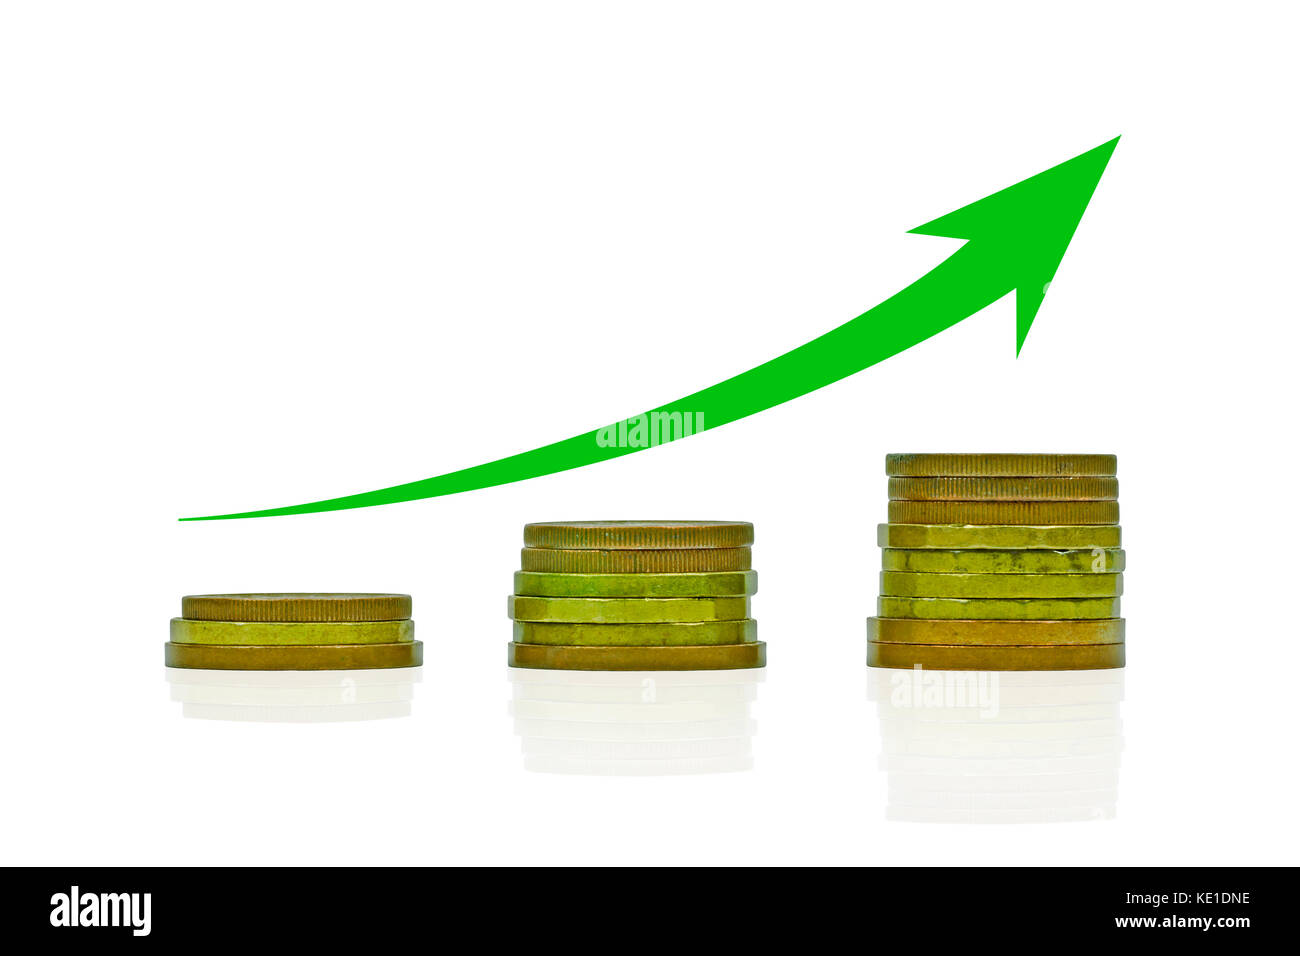 Vista ravvicinata di tre pile di monete disposte in un grafico crescente con freccia verde, isolate su uno sfondo bianco Foto Stock